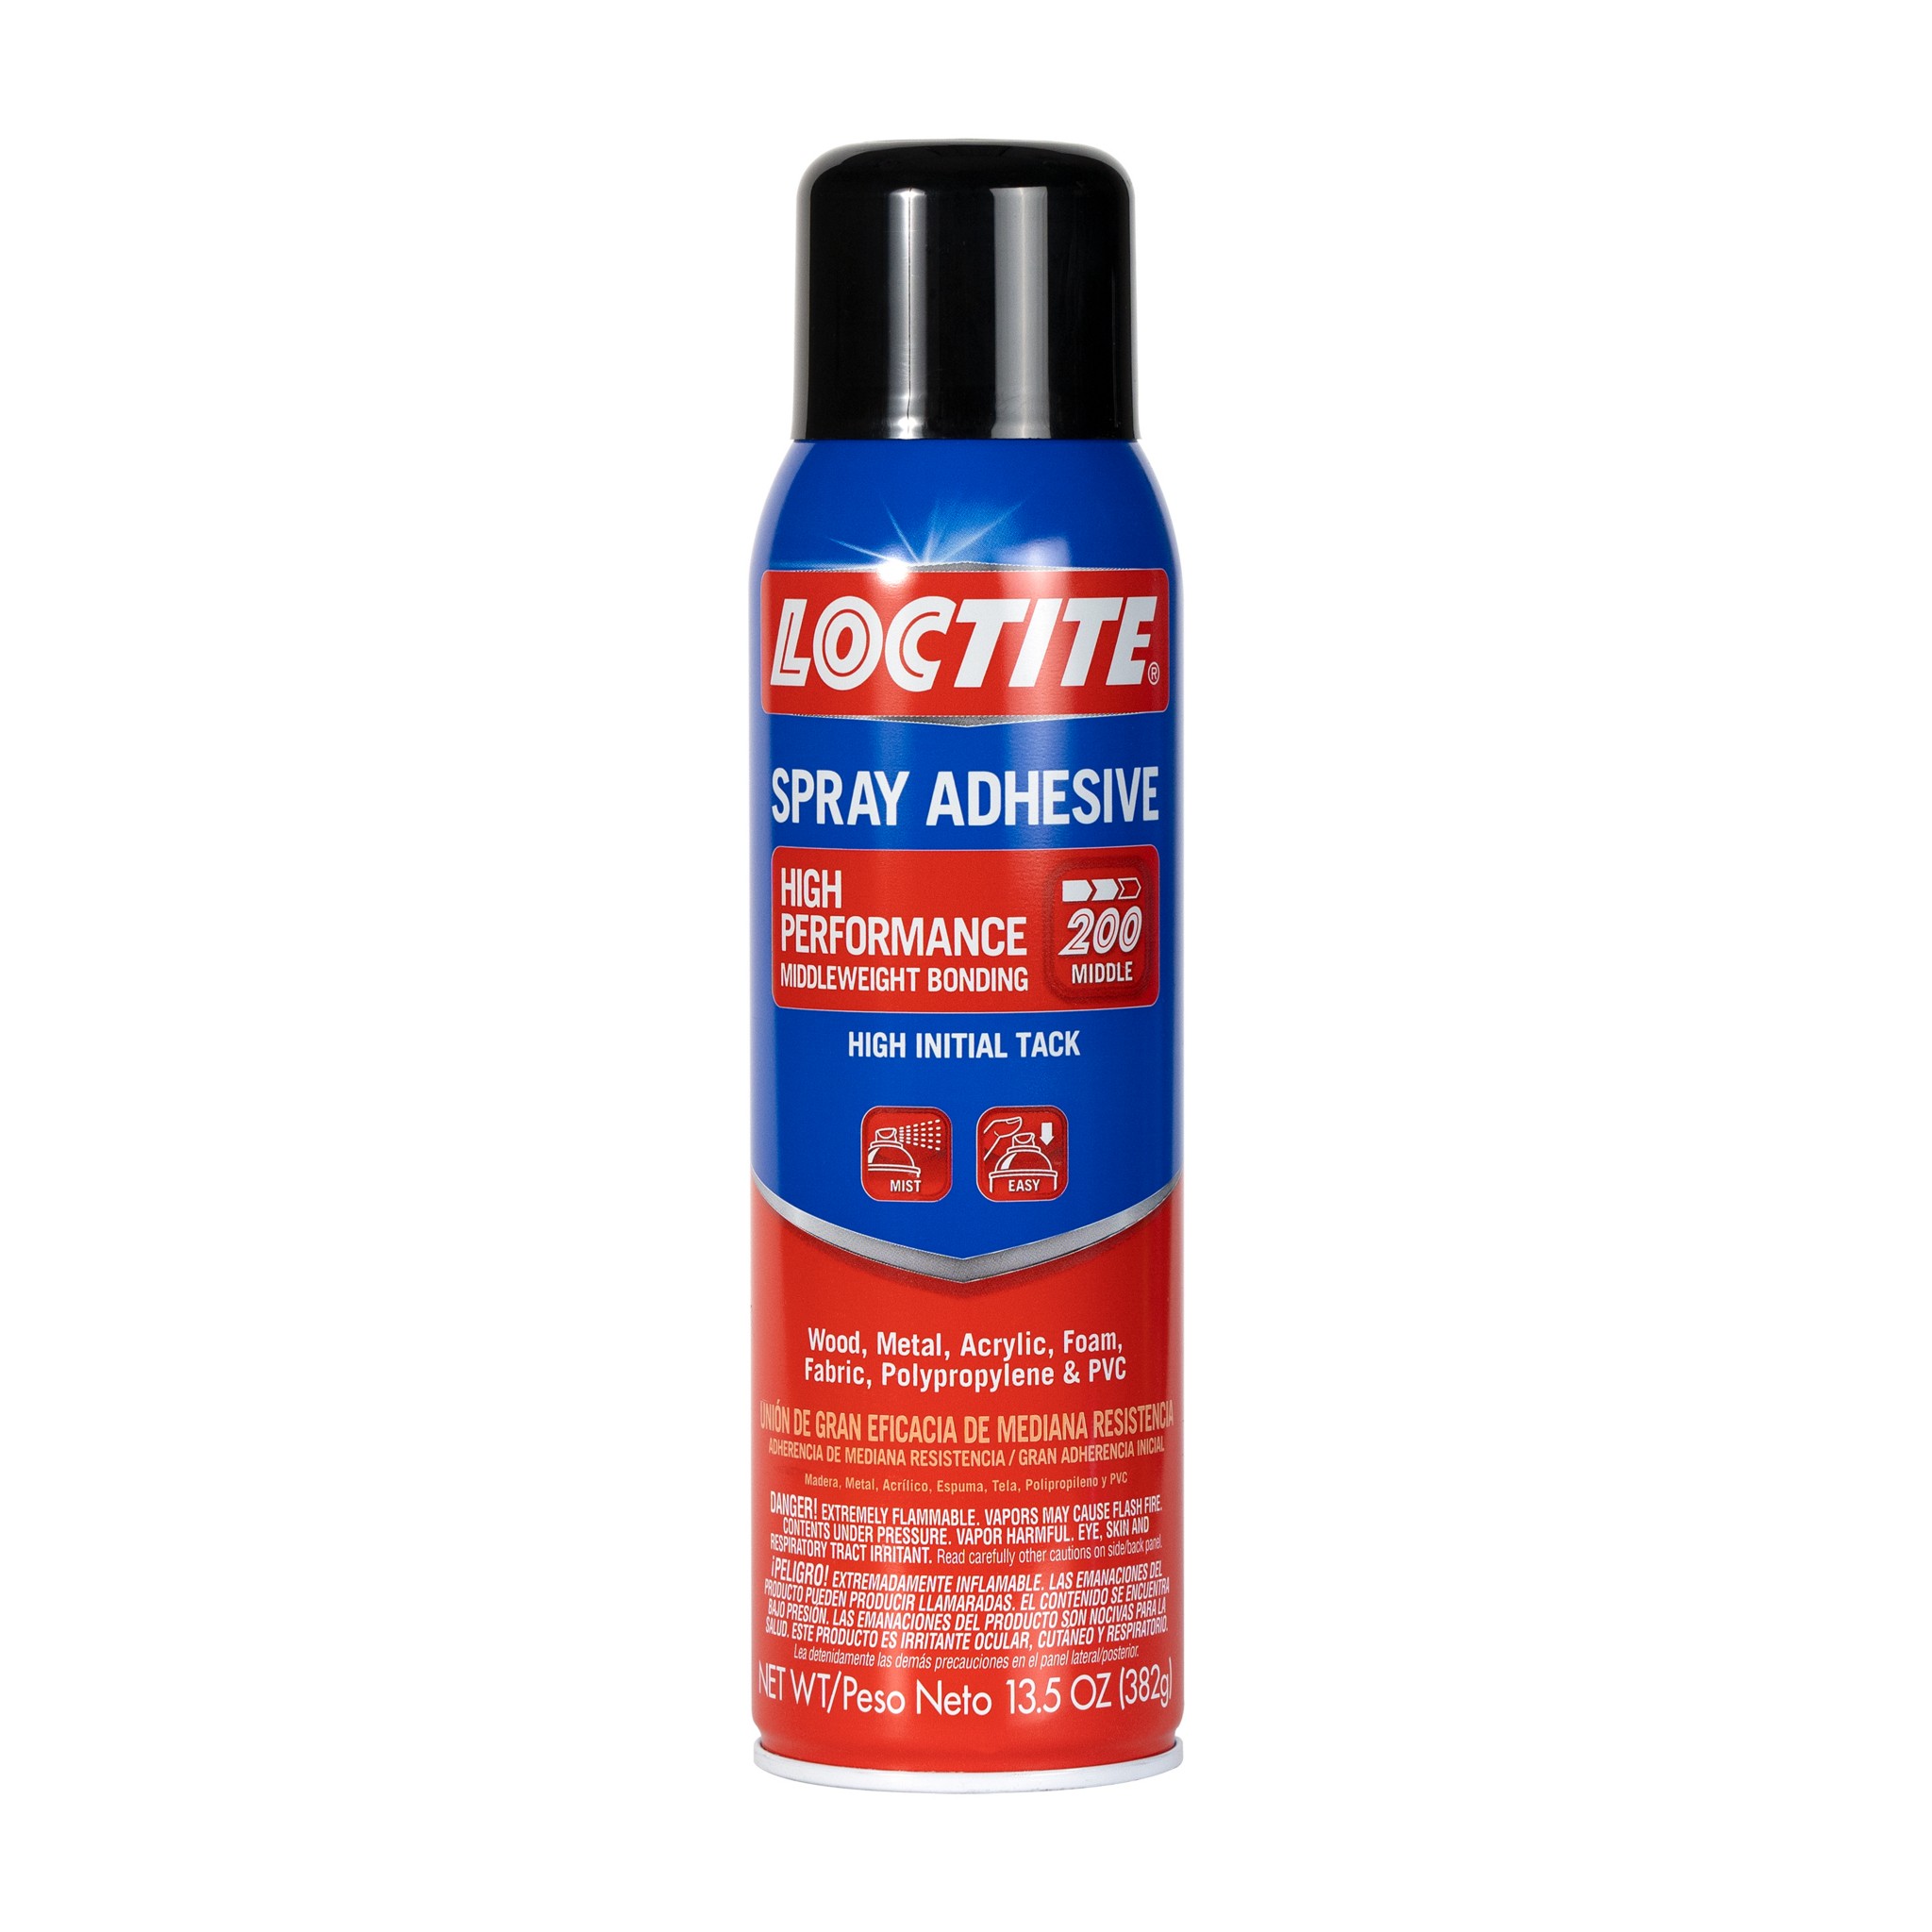 Loctite® Shoe Glue